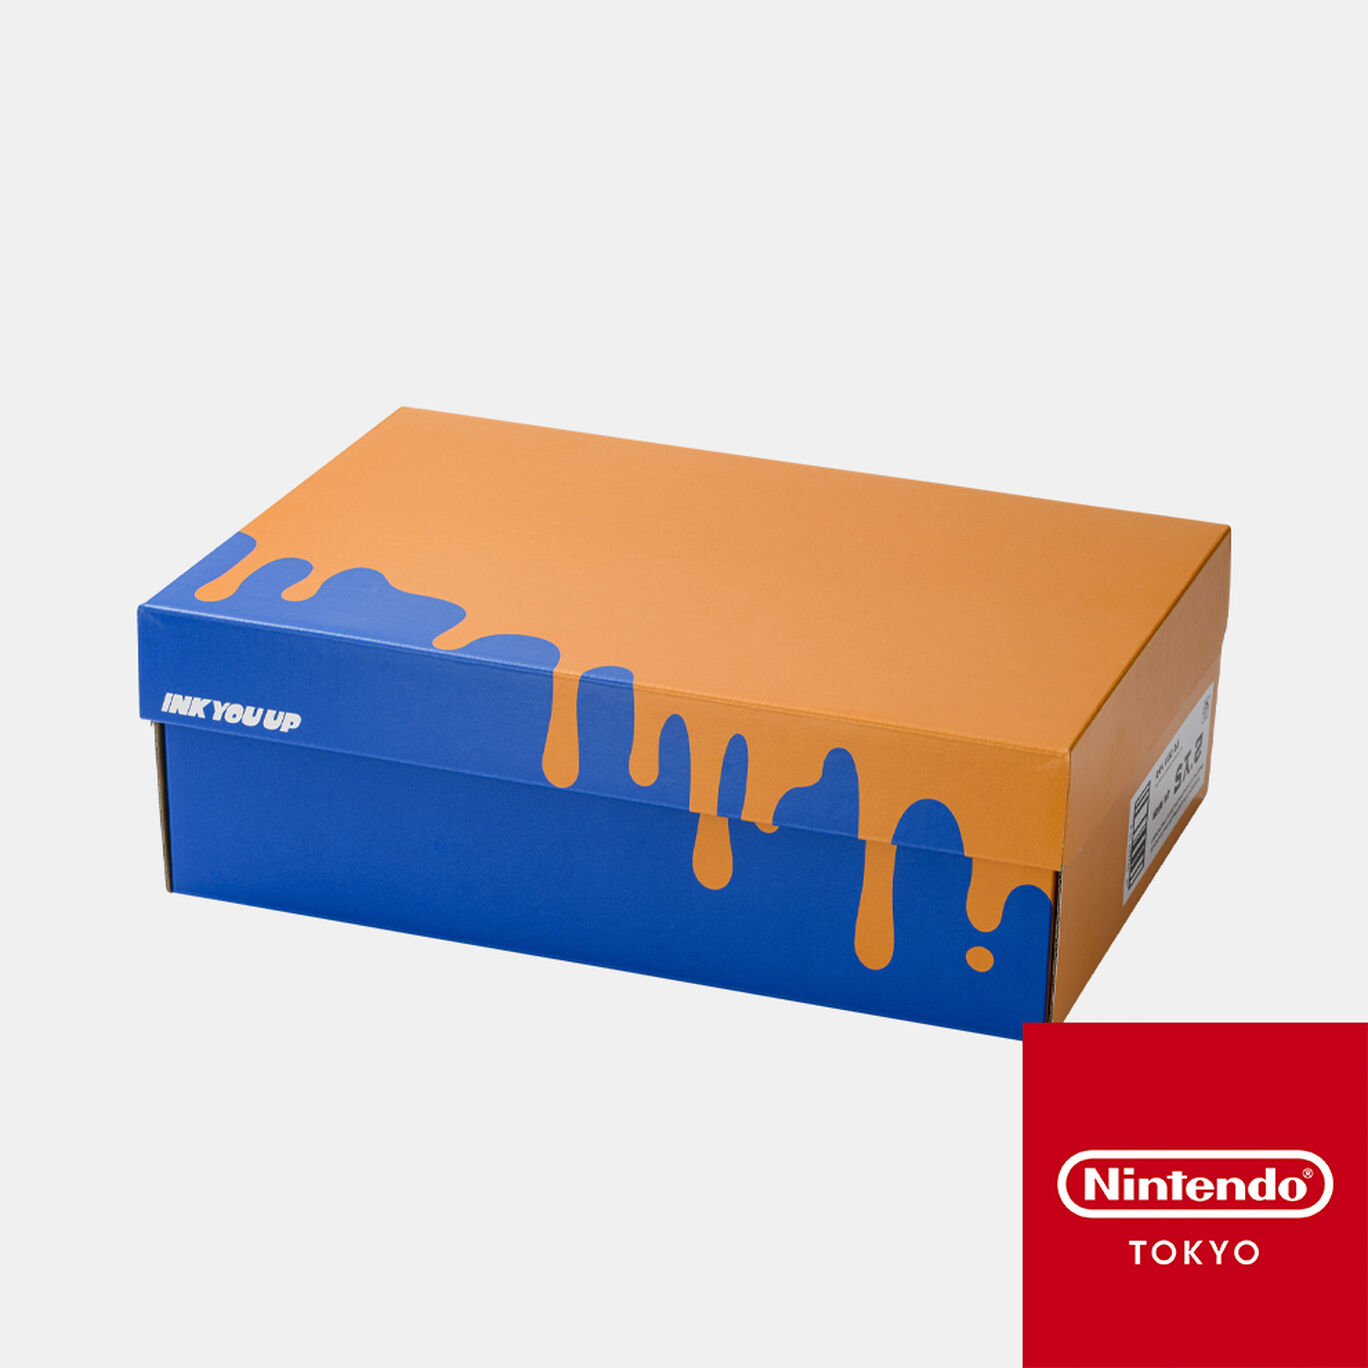 シューズボックス風収納BOX A INK YOU UP【Nintendo TOKYO取り扱い商品】